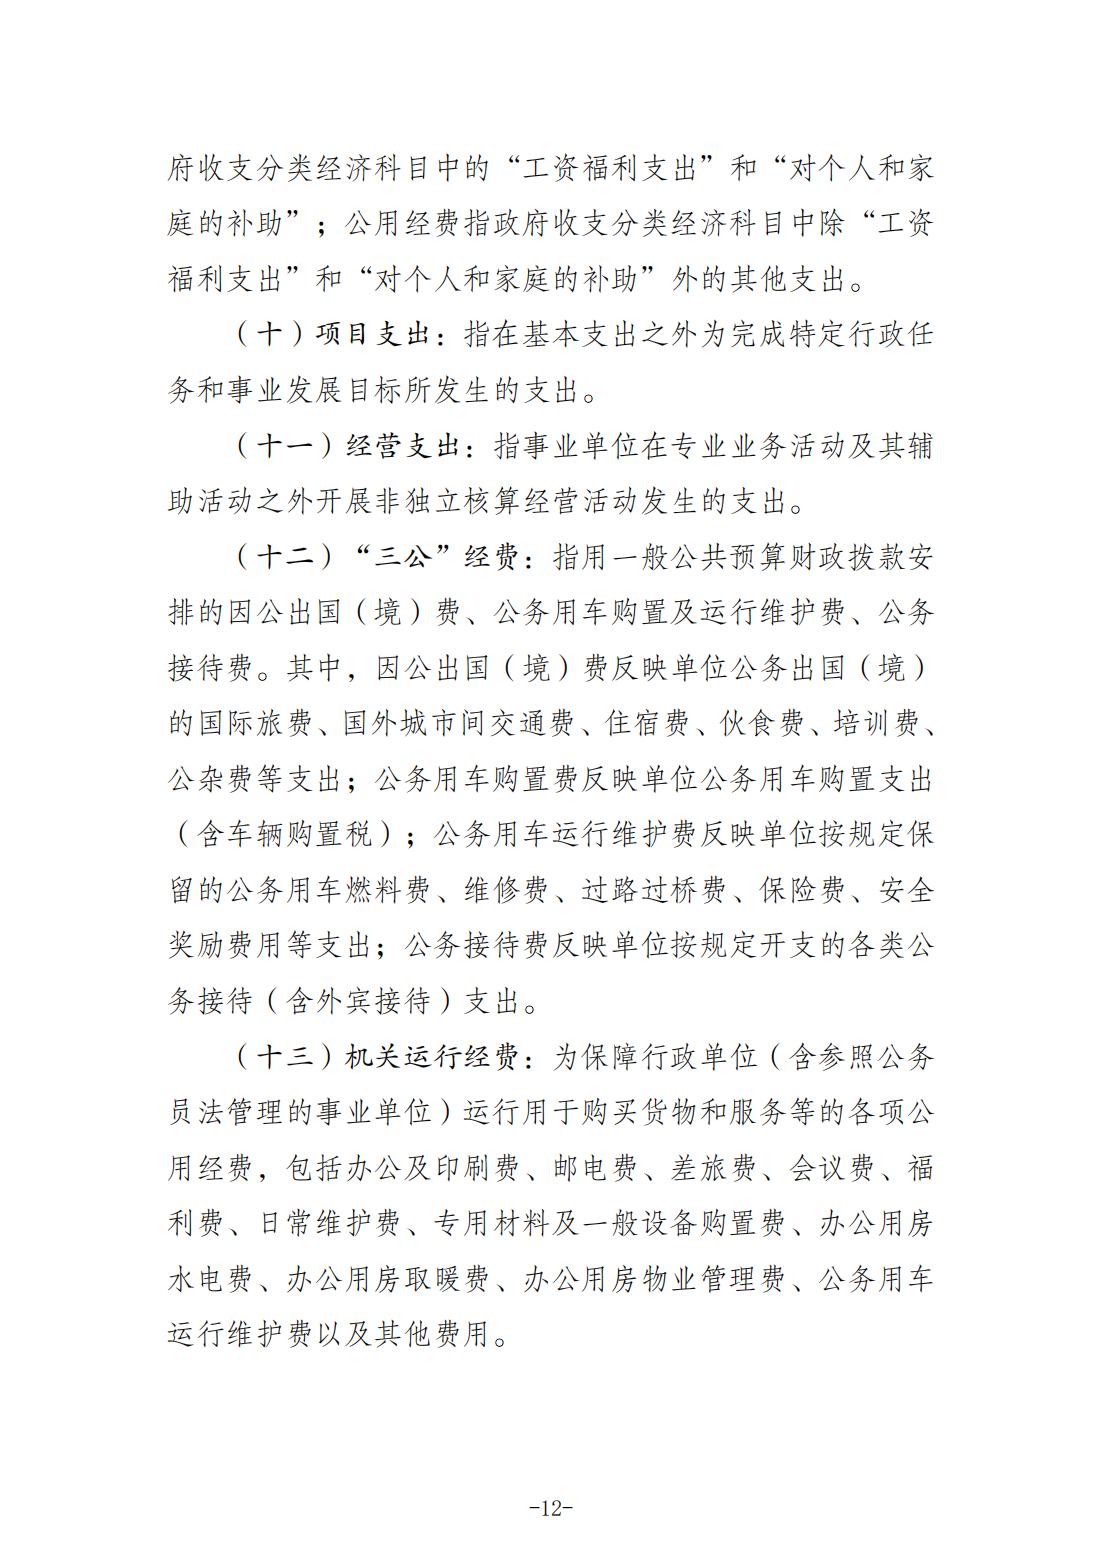 重庆城市职业学院2021年度部门决算情况说明_11.jpg